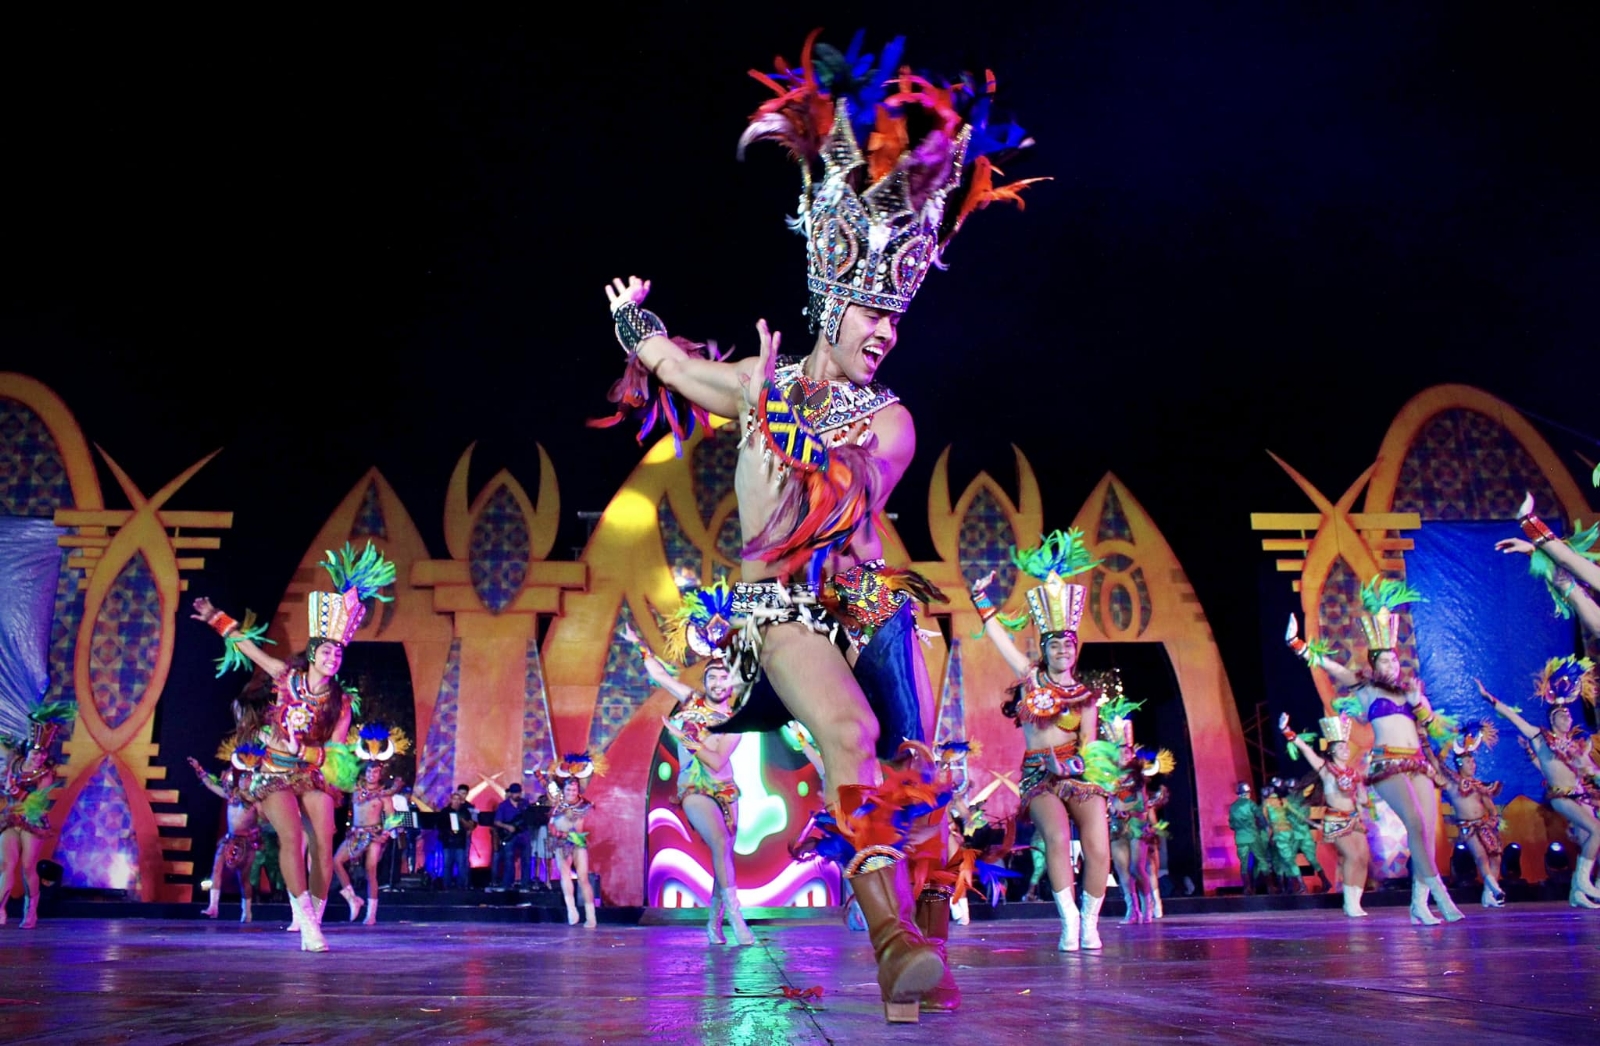 El Rey del Carnaval de Mérida, Eddier I luce sus mejores pasos de baile